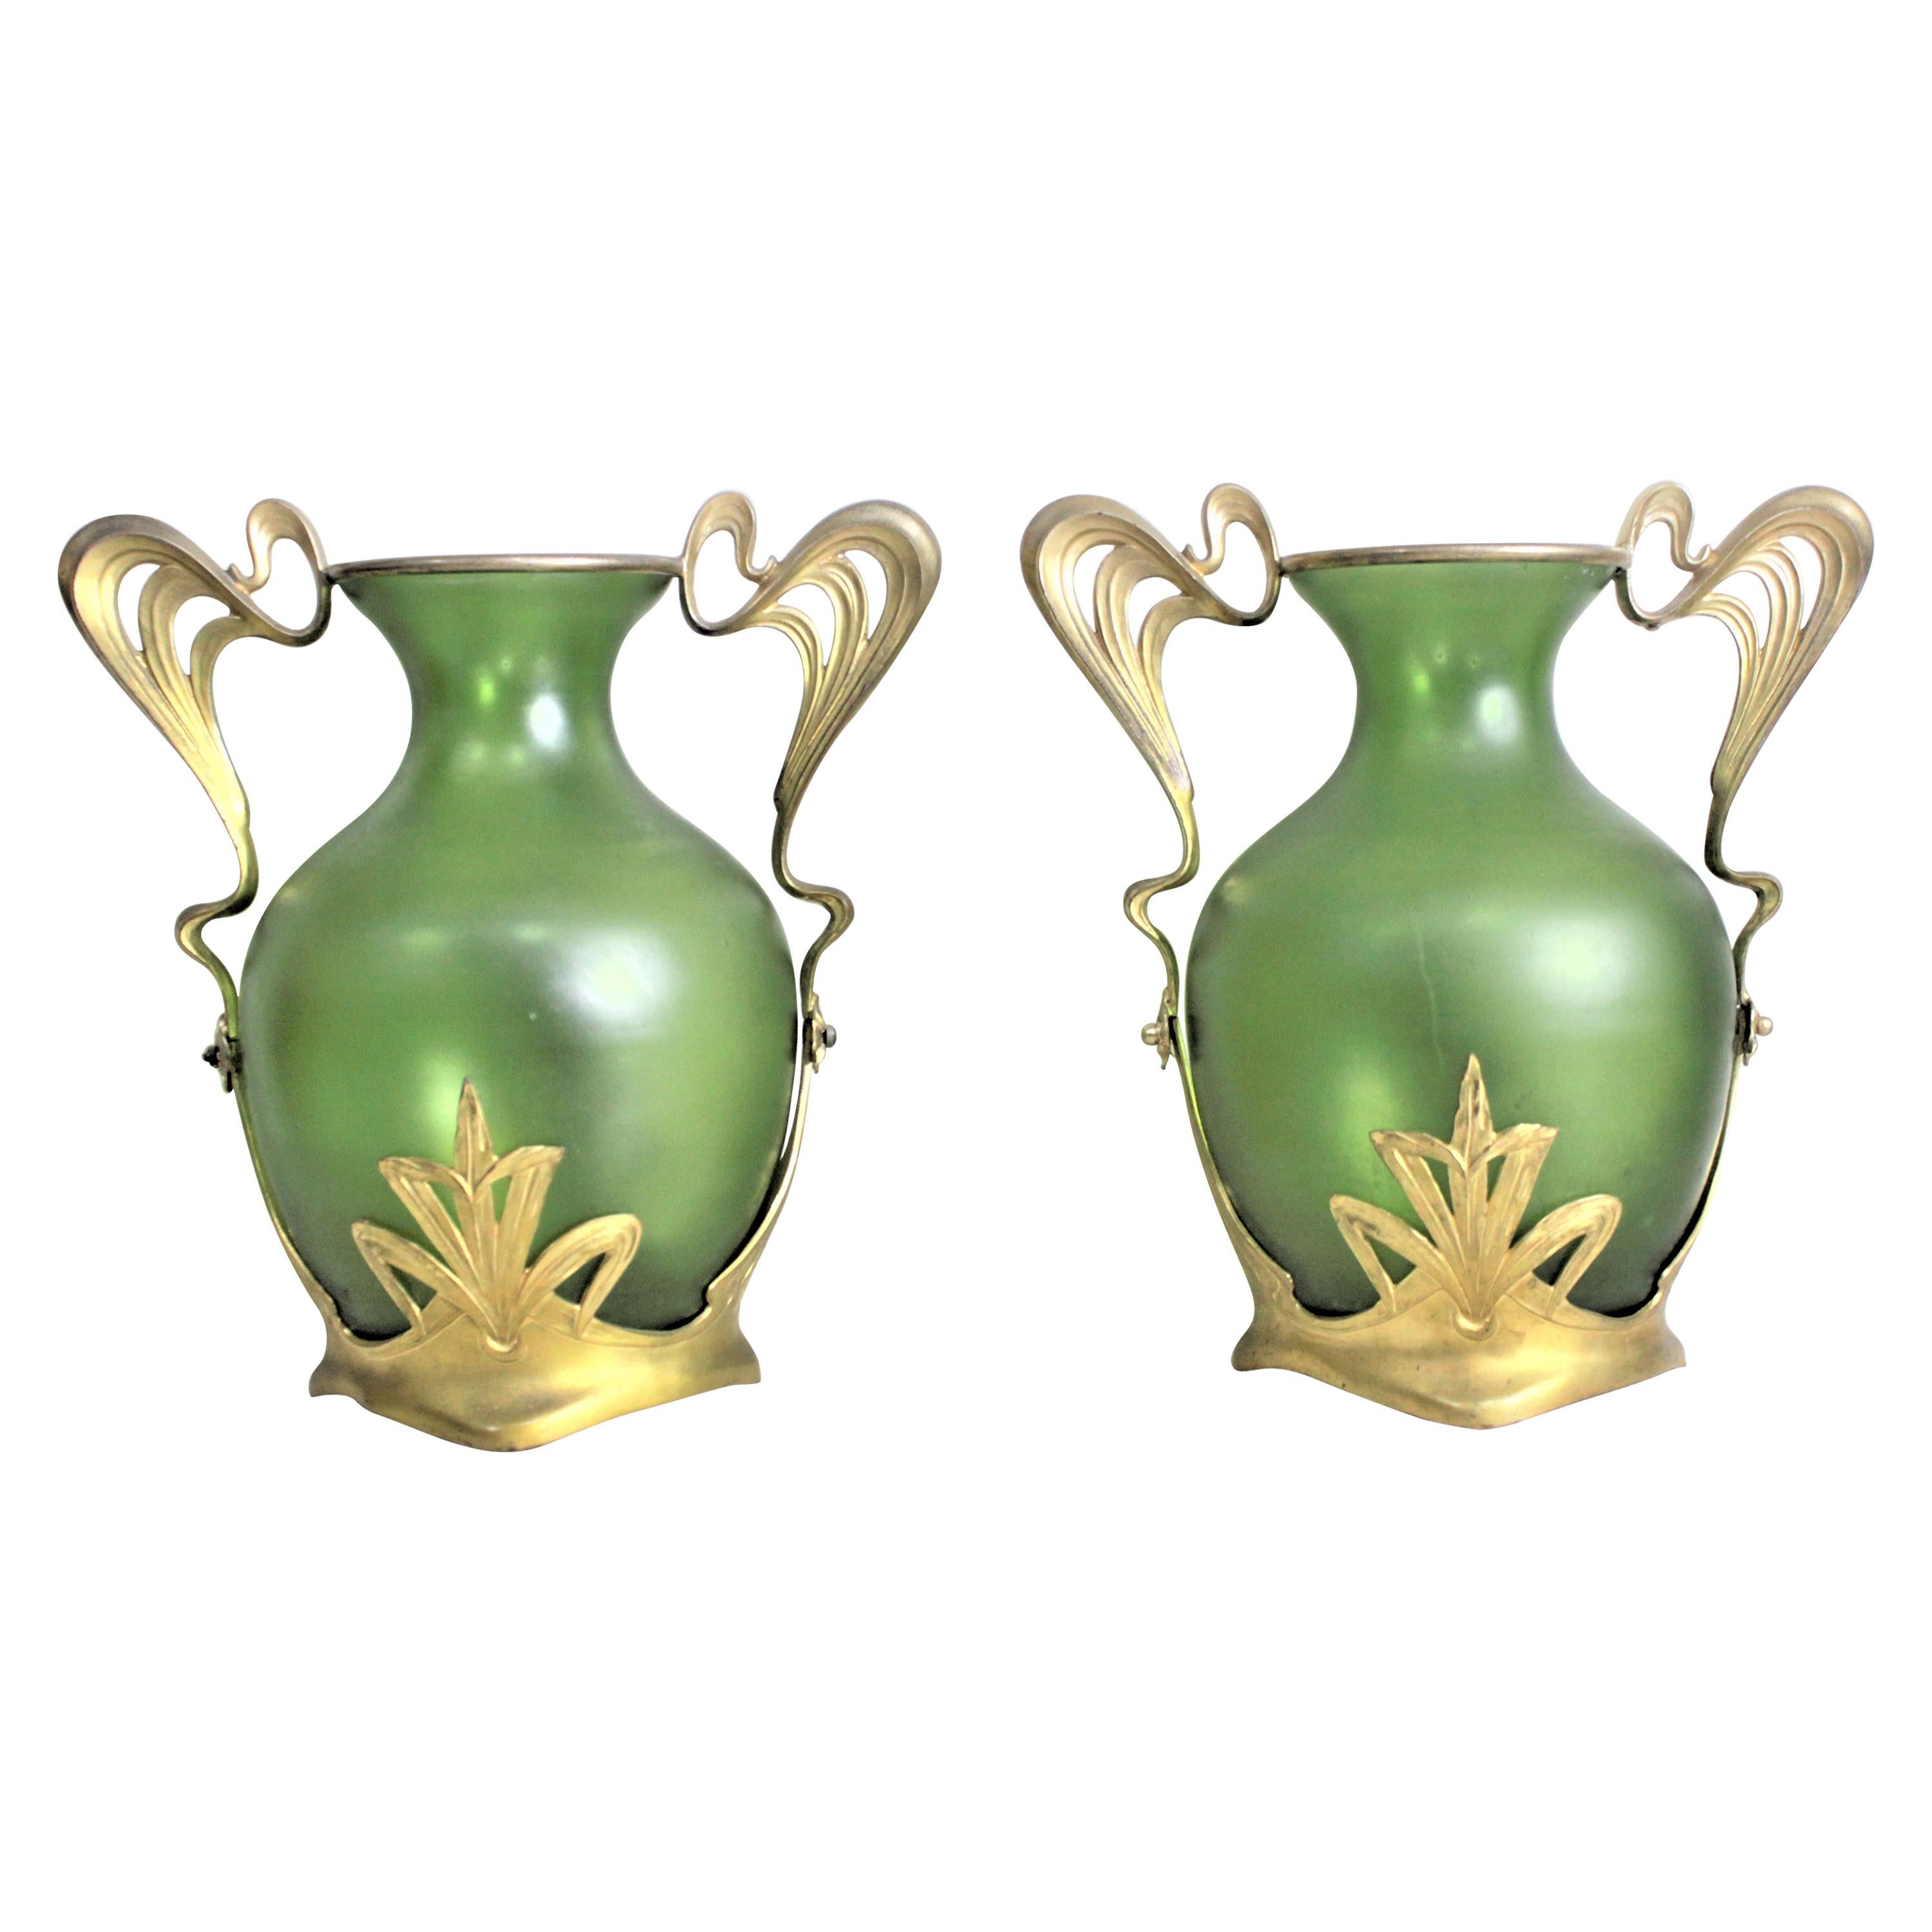 Paire de vases autrichiens verts Art nouveau avec montures en métal doré